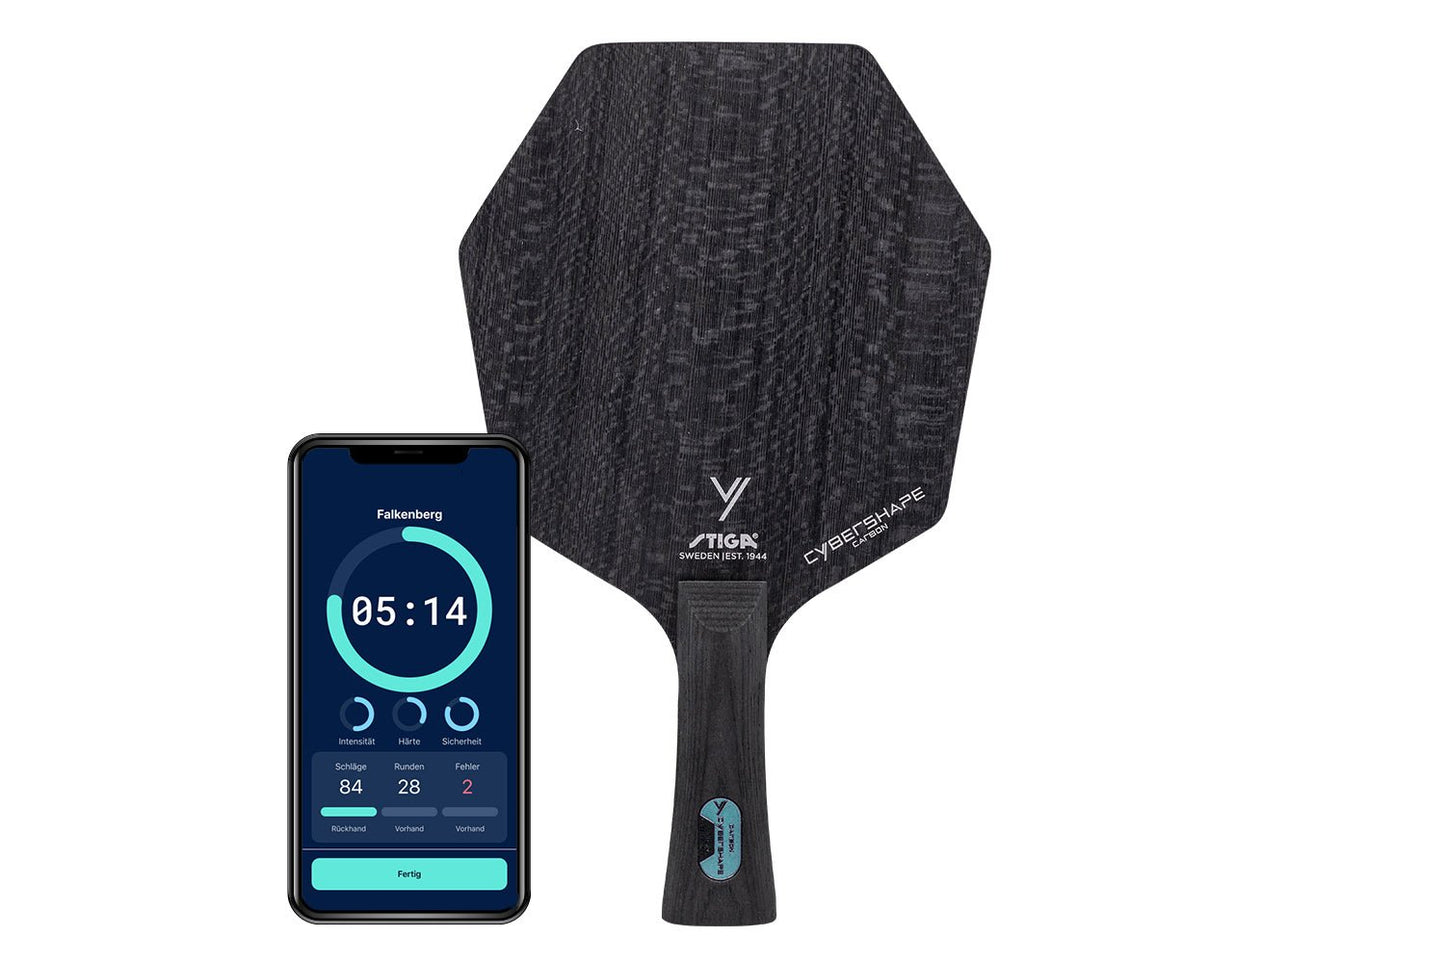 Stiga Cybershape Carbon Tischtennisschläger mit konkaven Griff und Smartphone zeigt Daten des Schlägers vor weißem Hintergrund